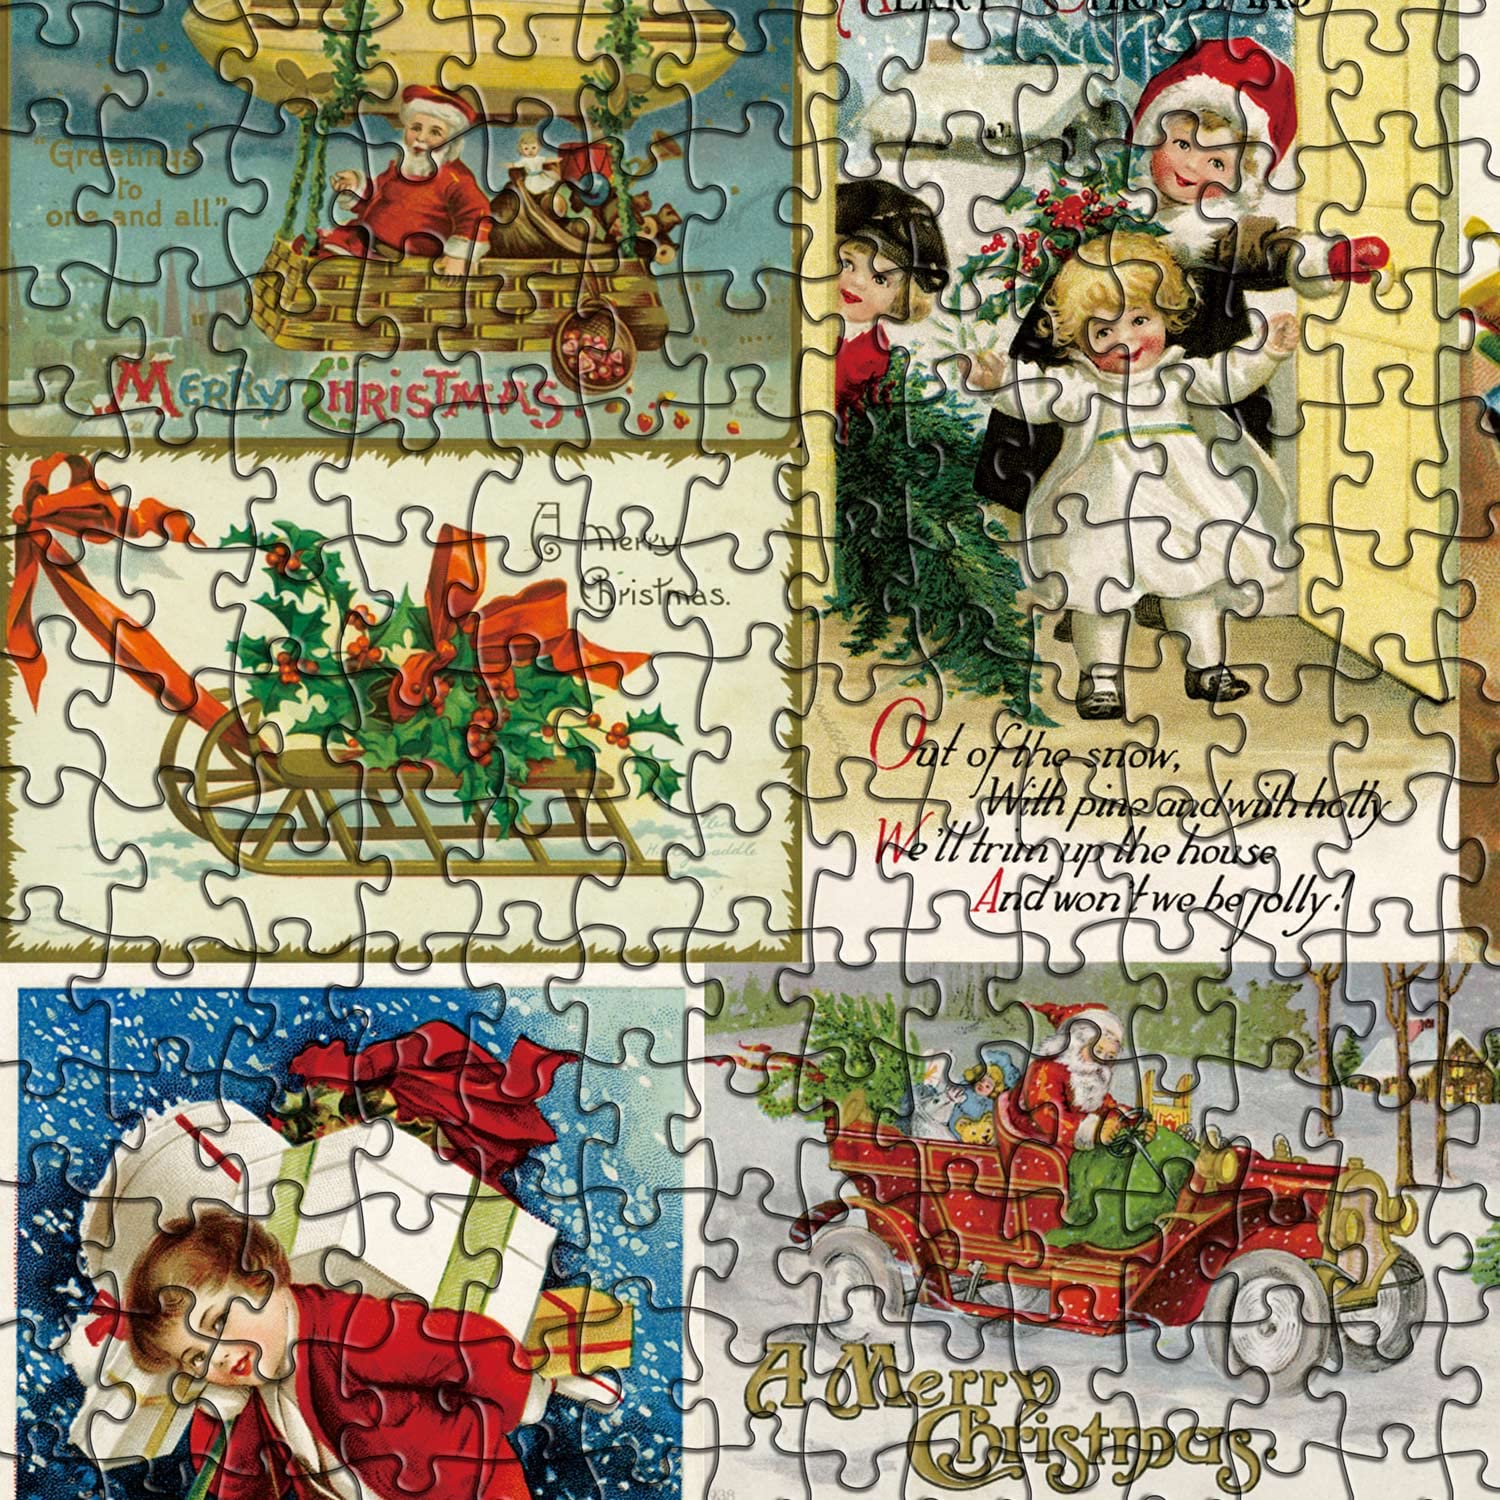 Pickforu® Vintage Weihnachtspostkarten Puzzle 1000 Teile